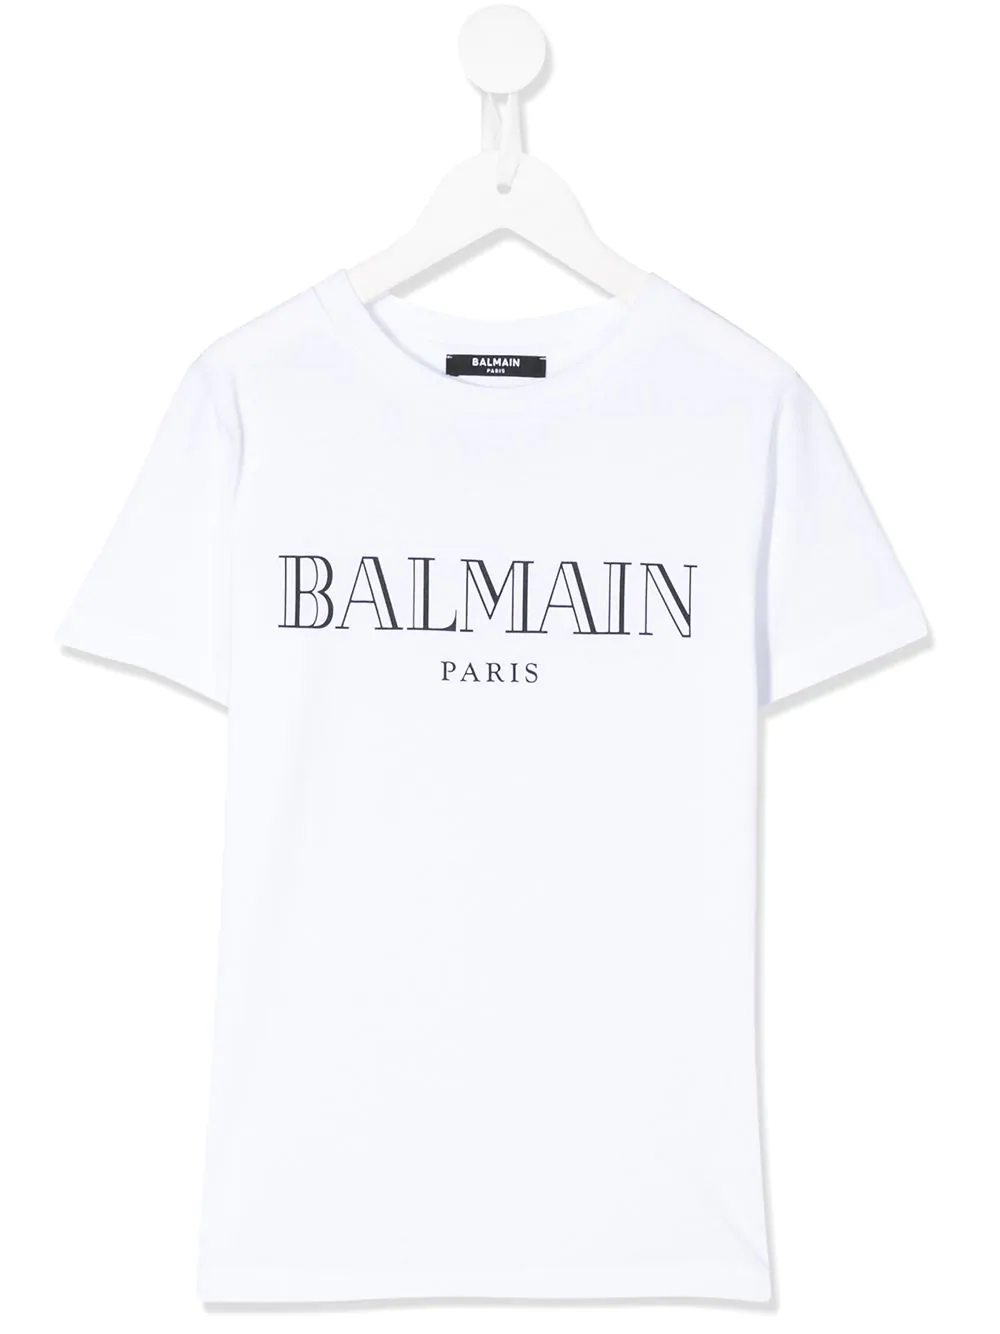 BALMAIN stores in | SHOPenauer